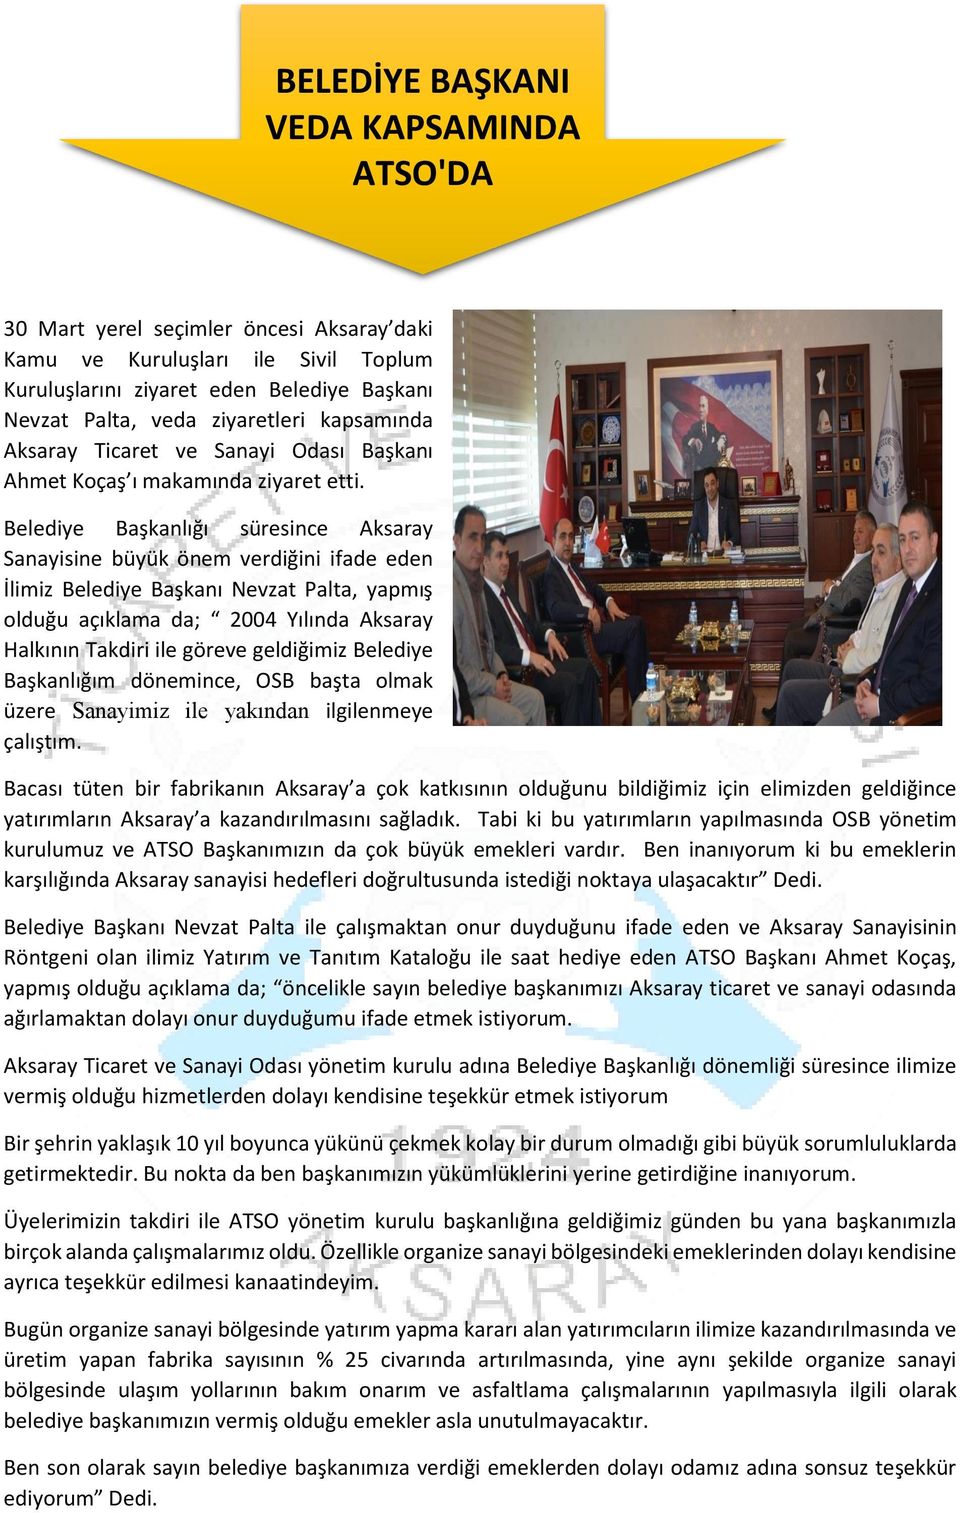 Belediye Başkanlığı süresince Aksaray Sanayisine büyük önem verdiğini ifade eden İlimiz Belediye Başkanı Nevzat Palta, yapmış olduğu açıklama da; 2004 Yılında Aksaray Halkının Takdiri ile göreve